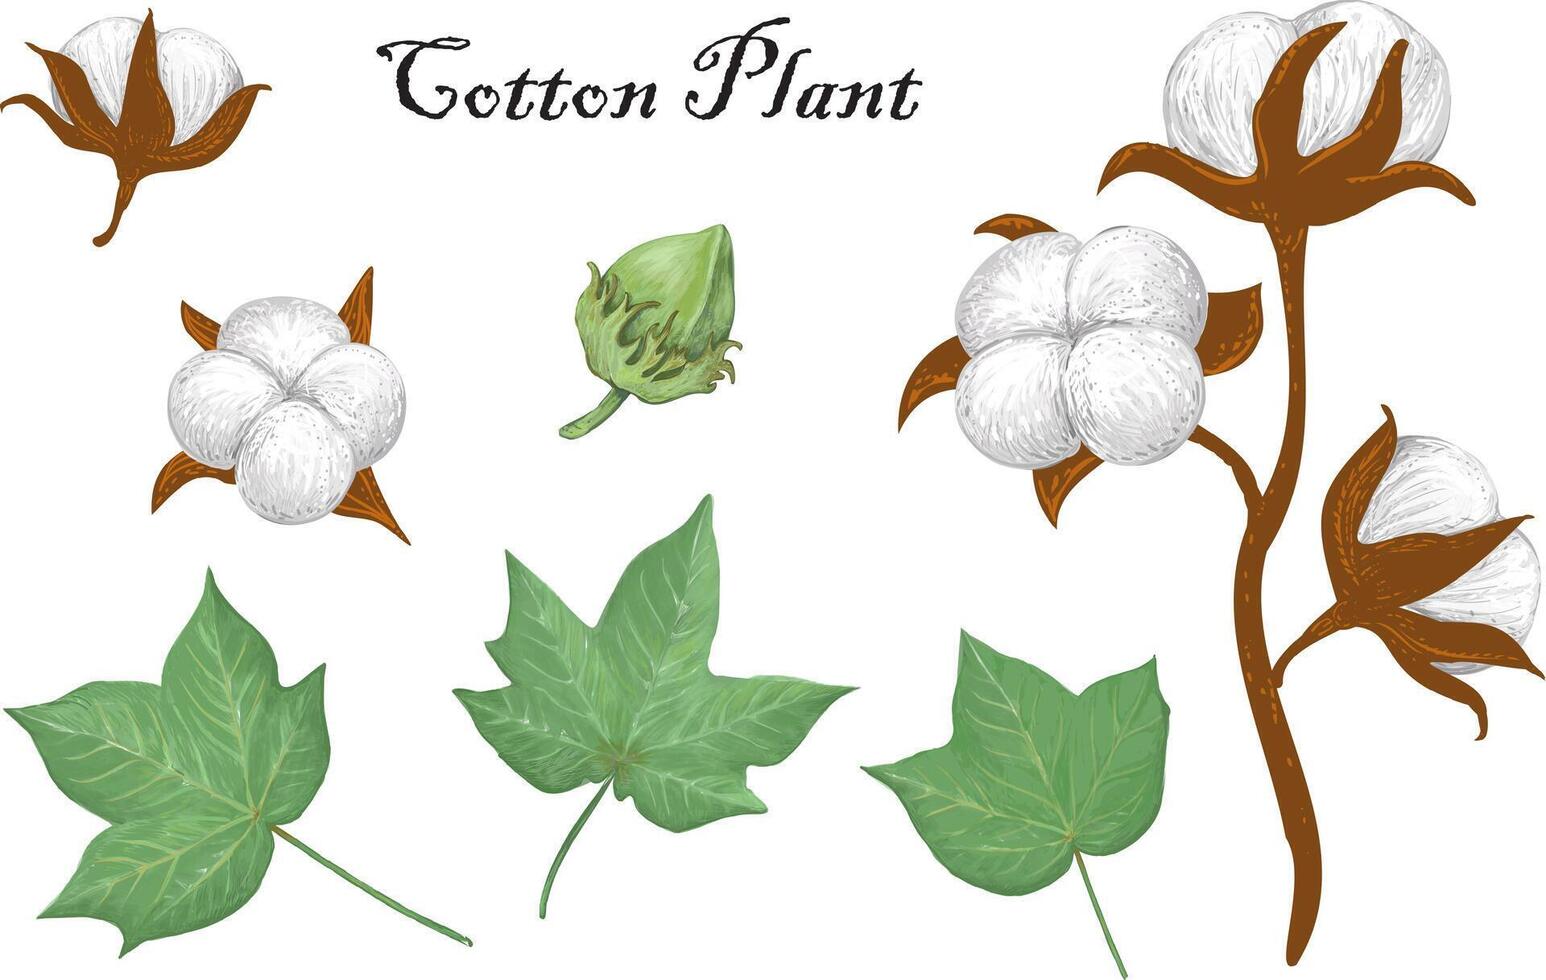 delicado realista mano dibujado vector ilustración de orgánico algodón planta elementos - provenir, hojas, brote y bolitas gosipio botánico ilustración en Clásico estilo.